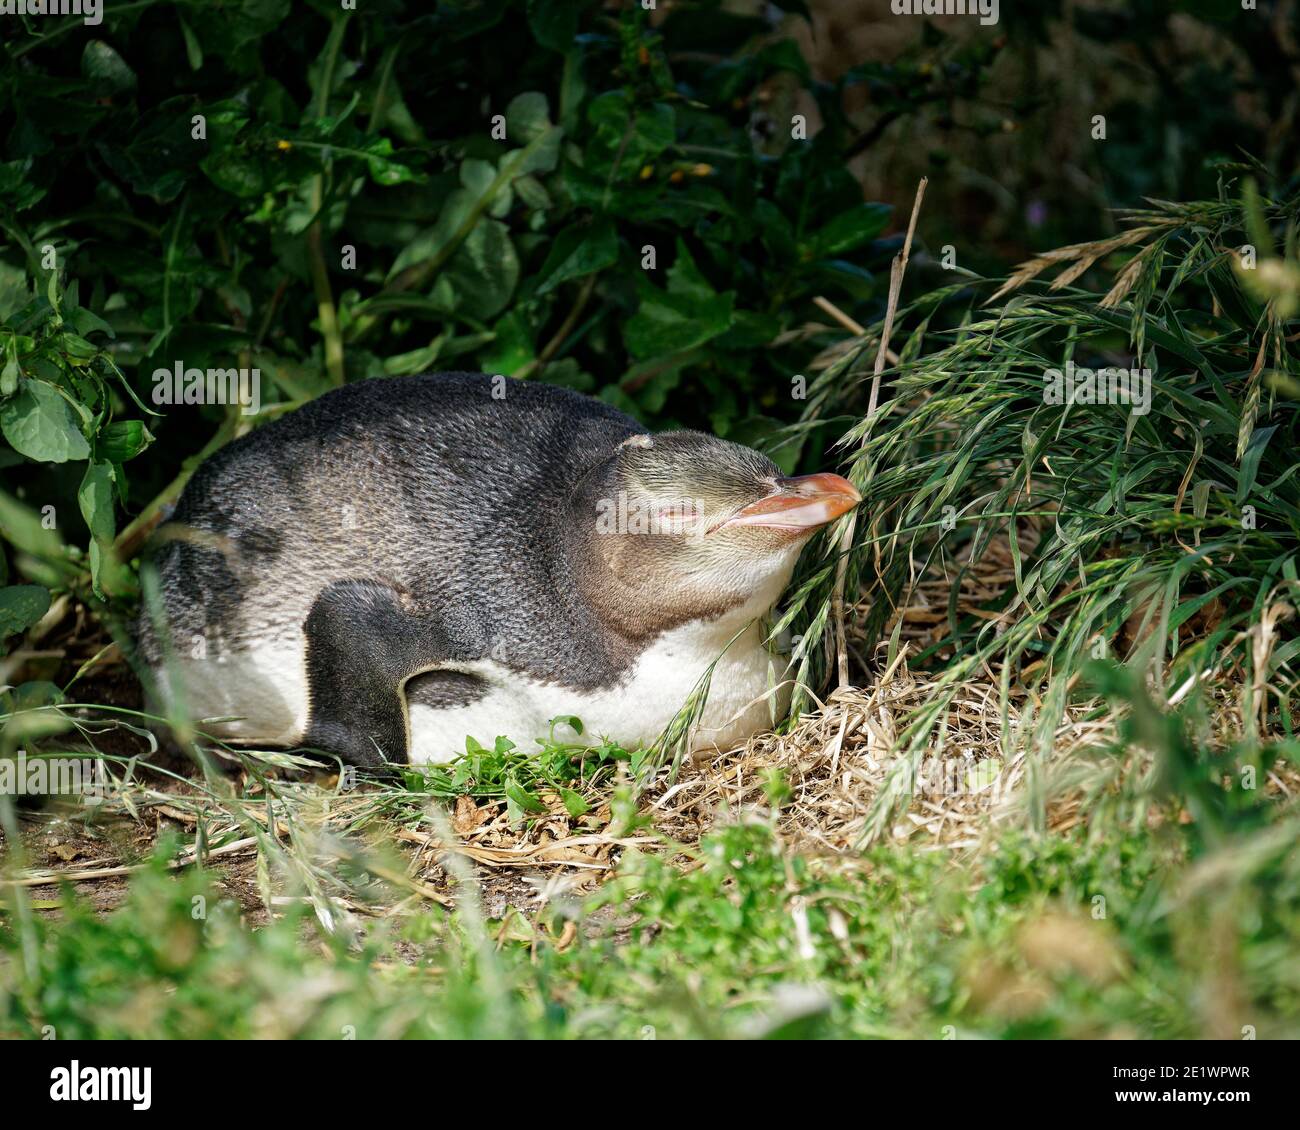 Un bébé pingouin aux yeux jaunes s'est endormi dans la sous-croissance en attendant qu'un parent retourne le nourrir, Otago, Nouvelle-Zélande. Banque D'Images